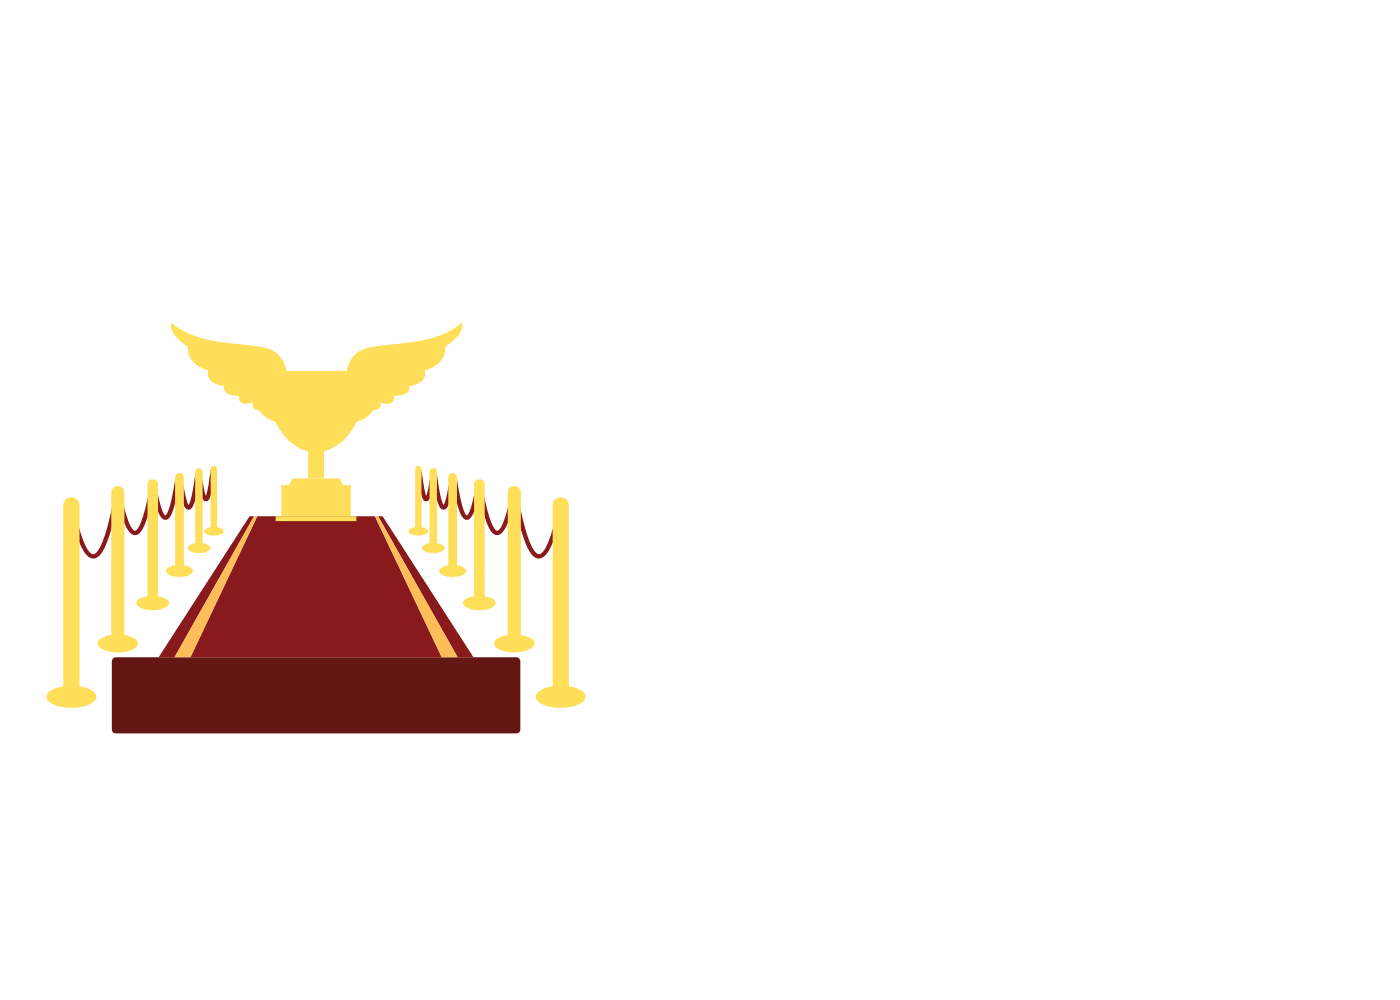 Festpro film festival